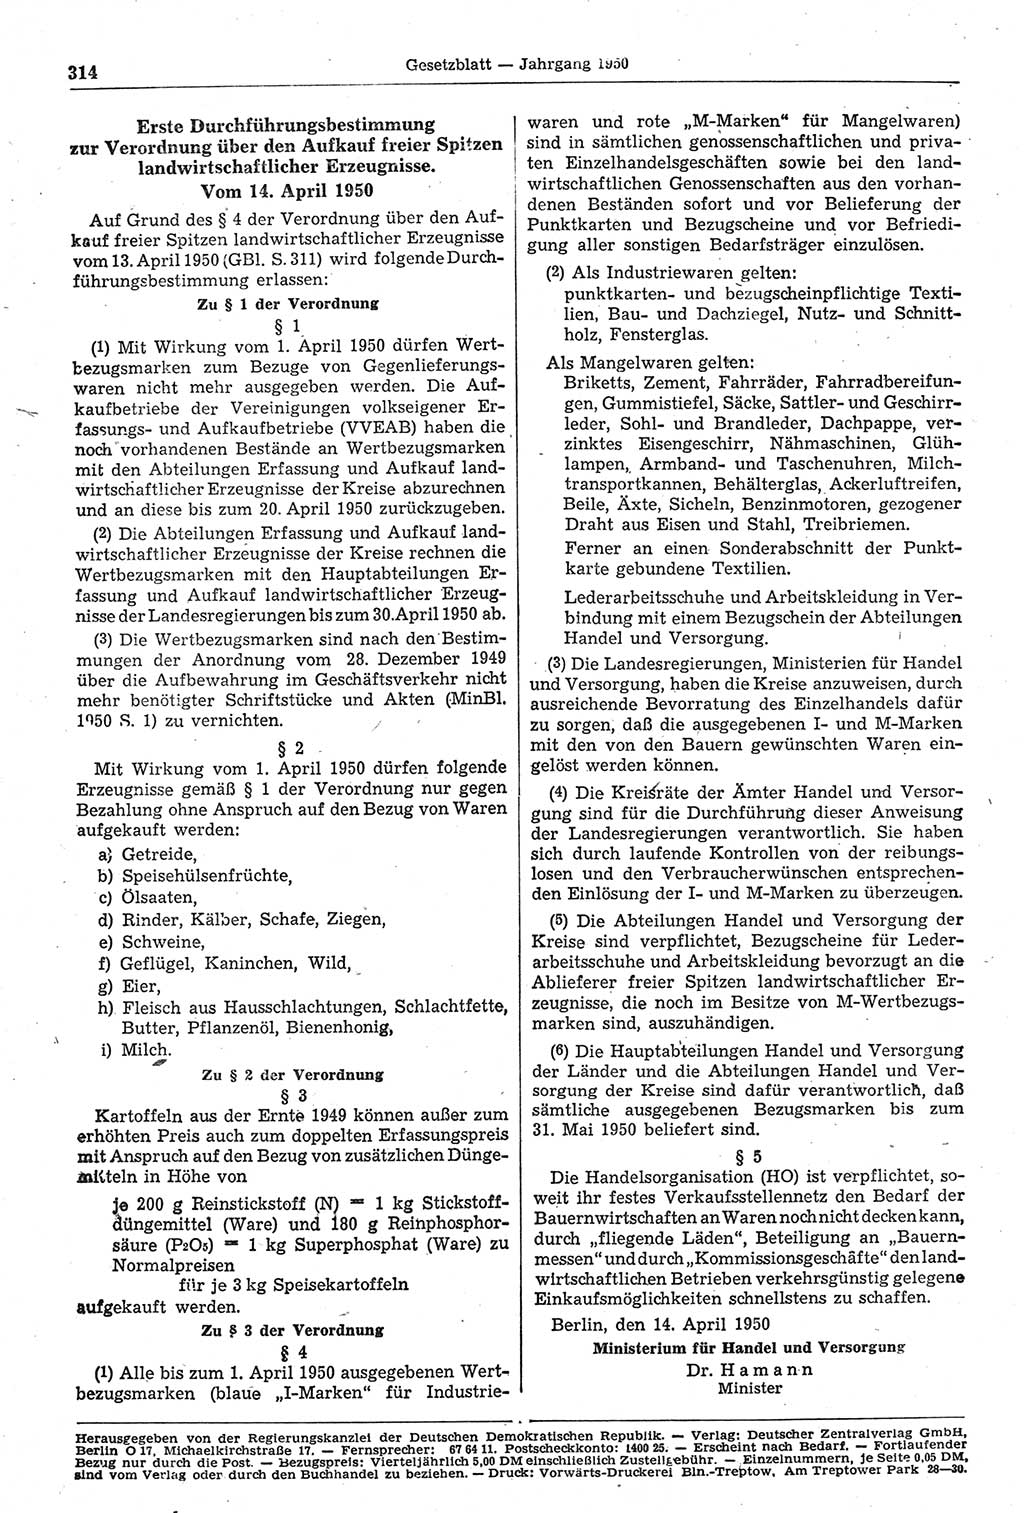 Gesetzblatt (GBl.) der Deutschen Demokratischen Republik (DDR) 1950, Seite 314 (GBl. DDR 1950, S. 314)